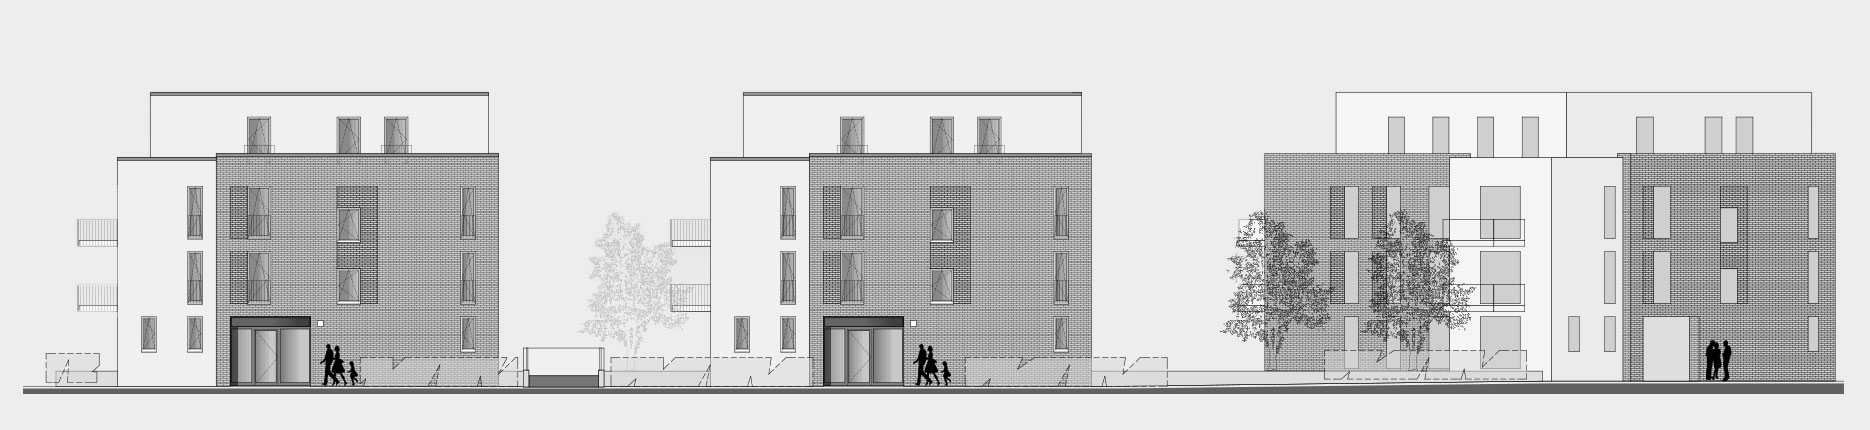 Architekturzeichnung - Diese Zeichnung zeigt ein Bauprojekt für Kapitalanleger in Hamburg Farmsen-Berne